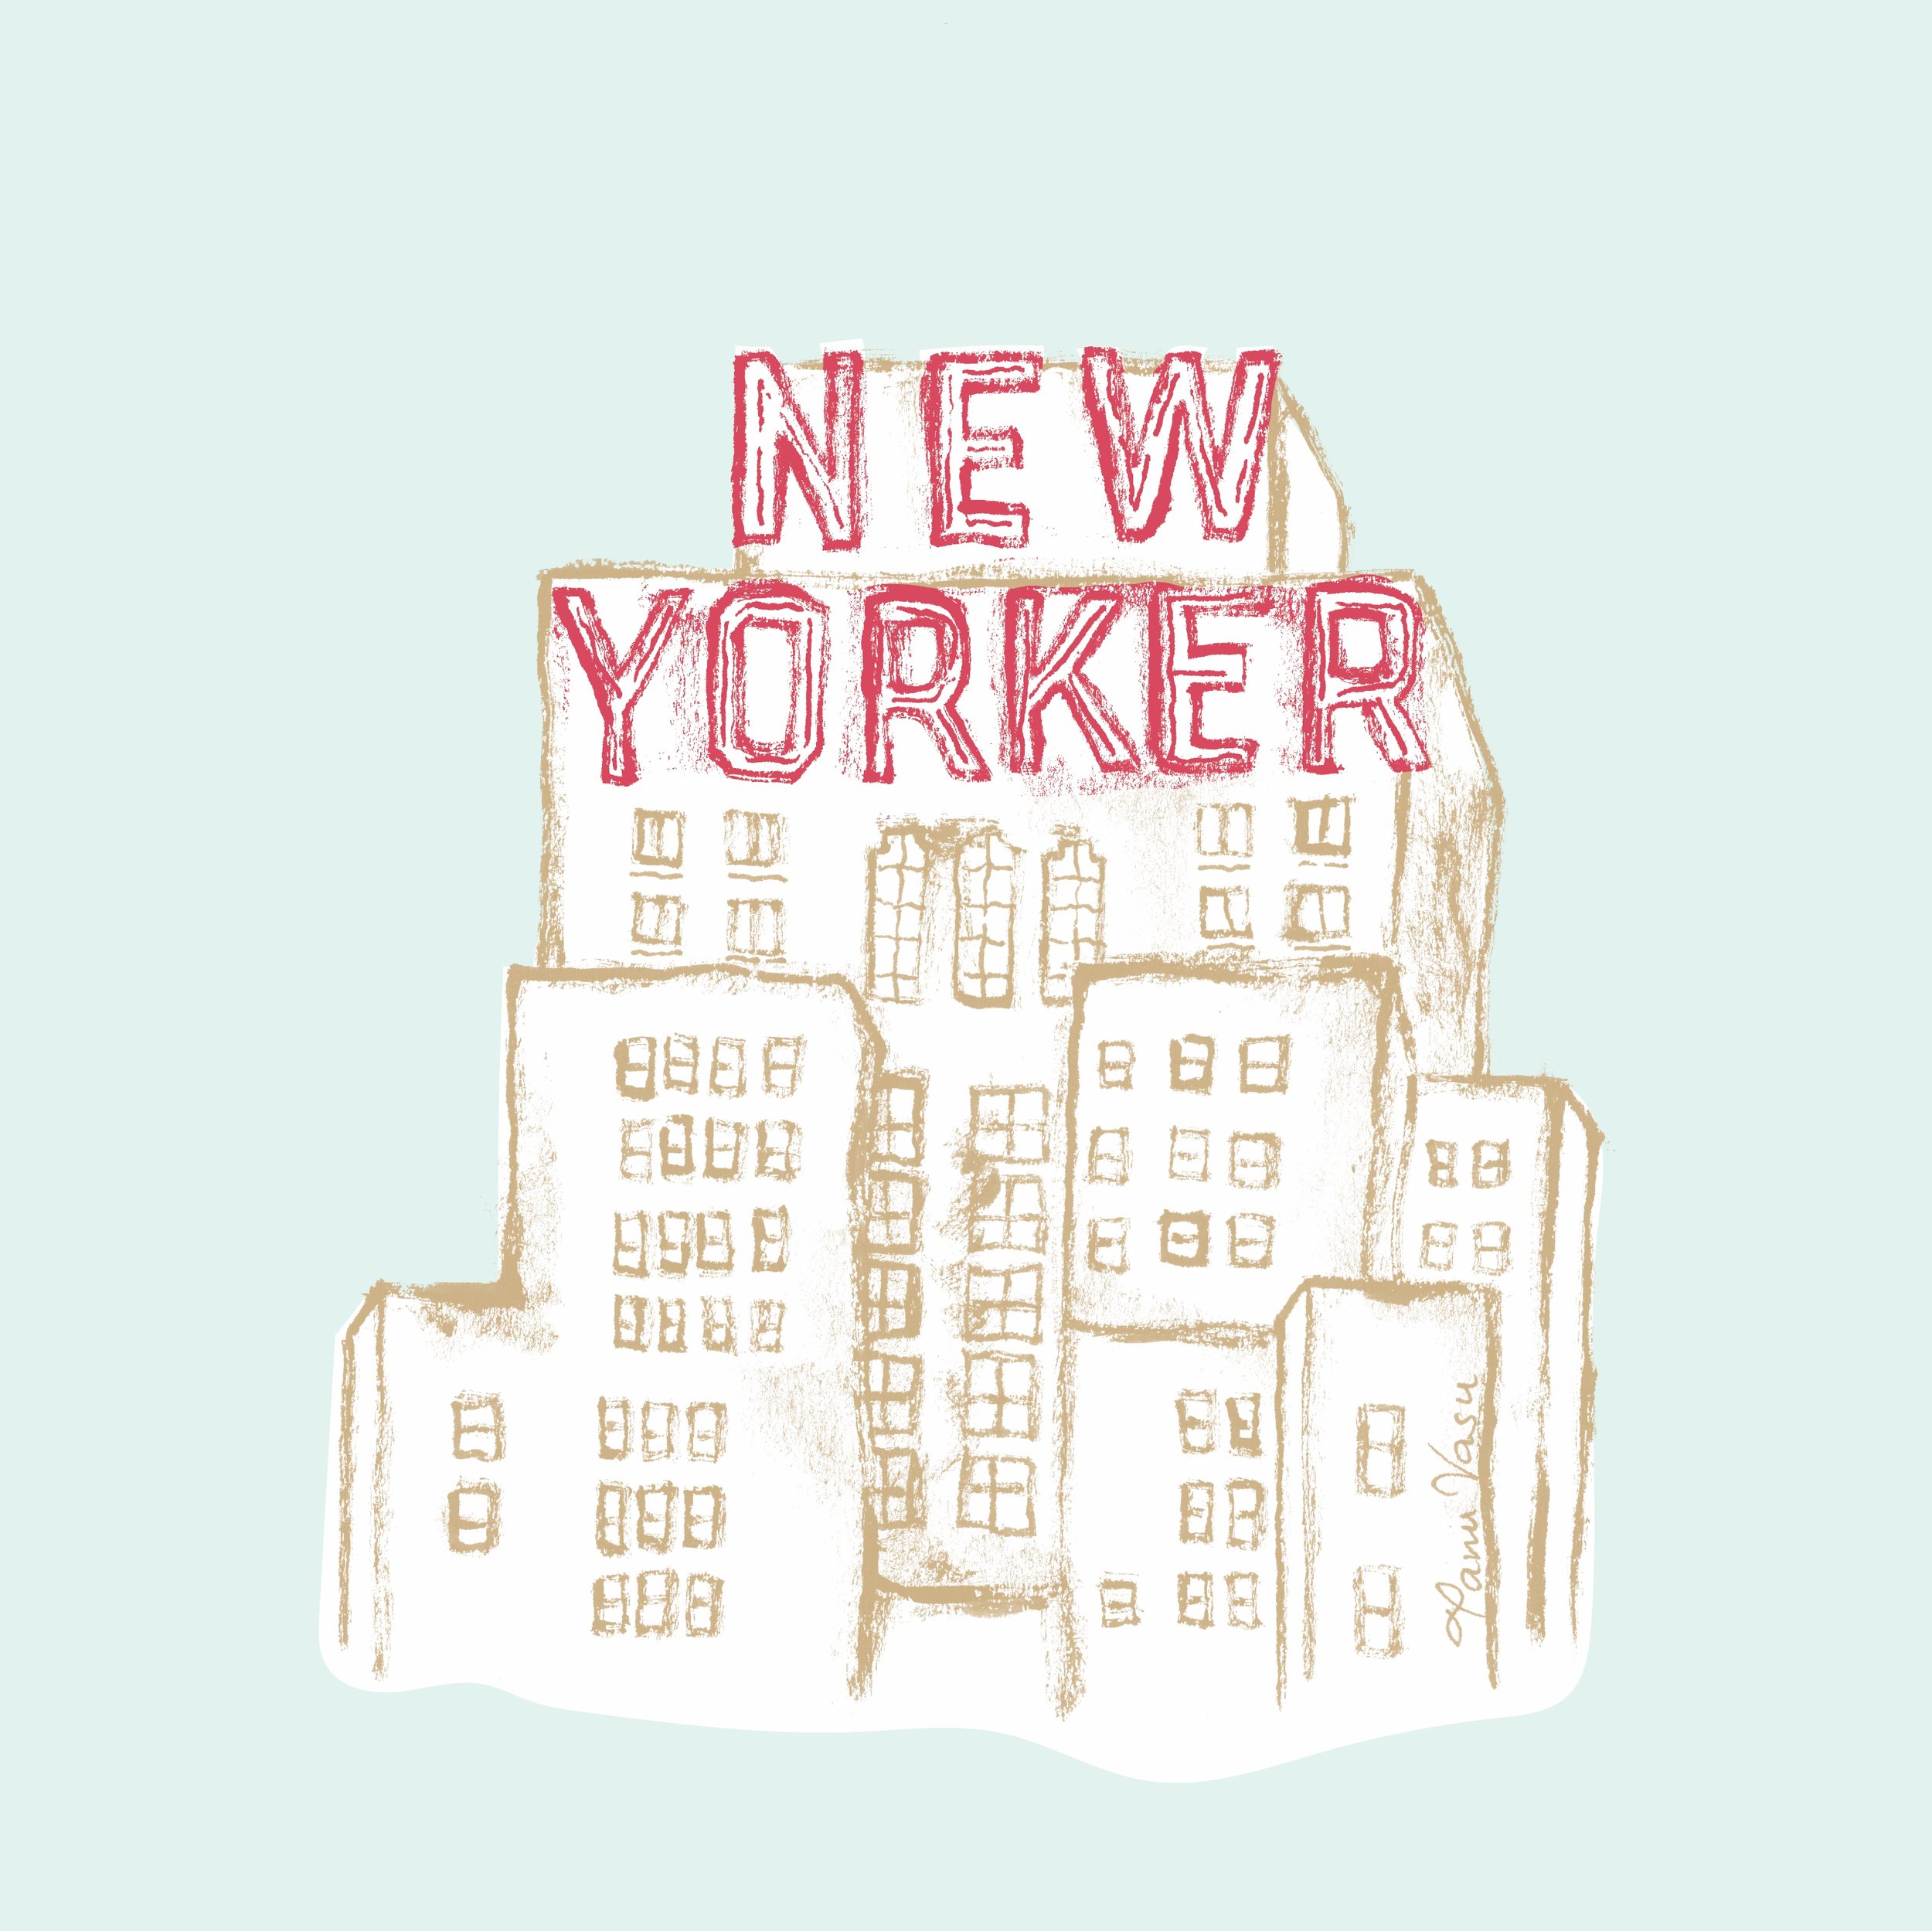 New York Memories - New Yorker product photo